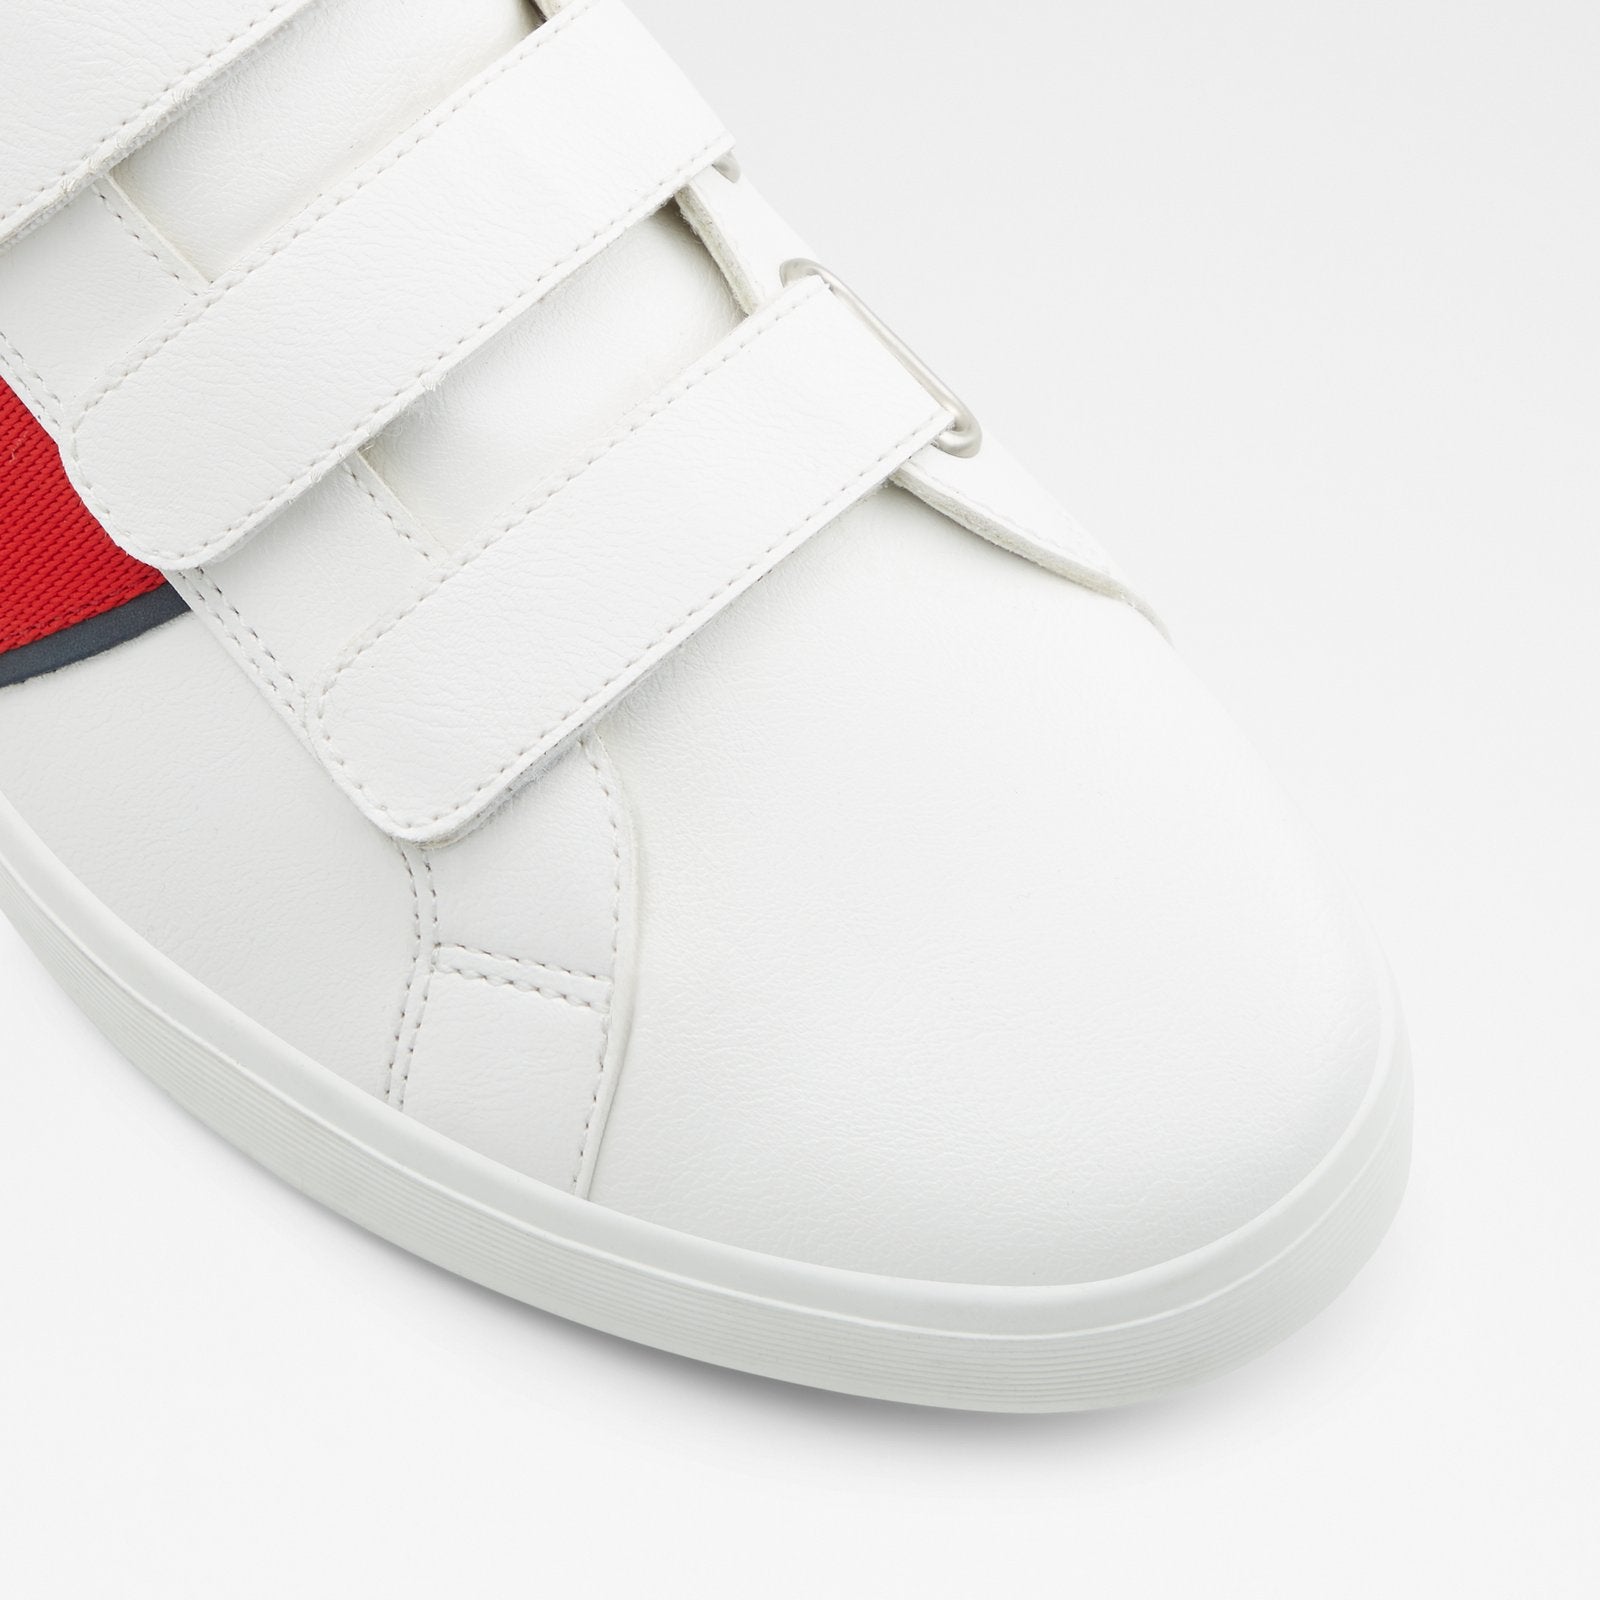 Citisole Men Shoes - White - ALDO KSA